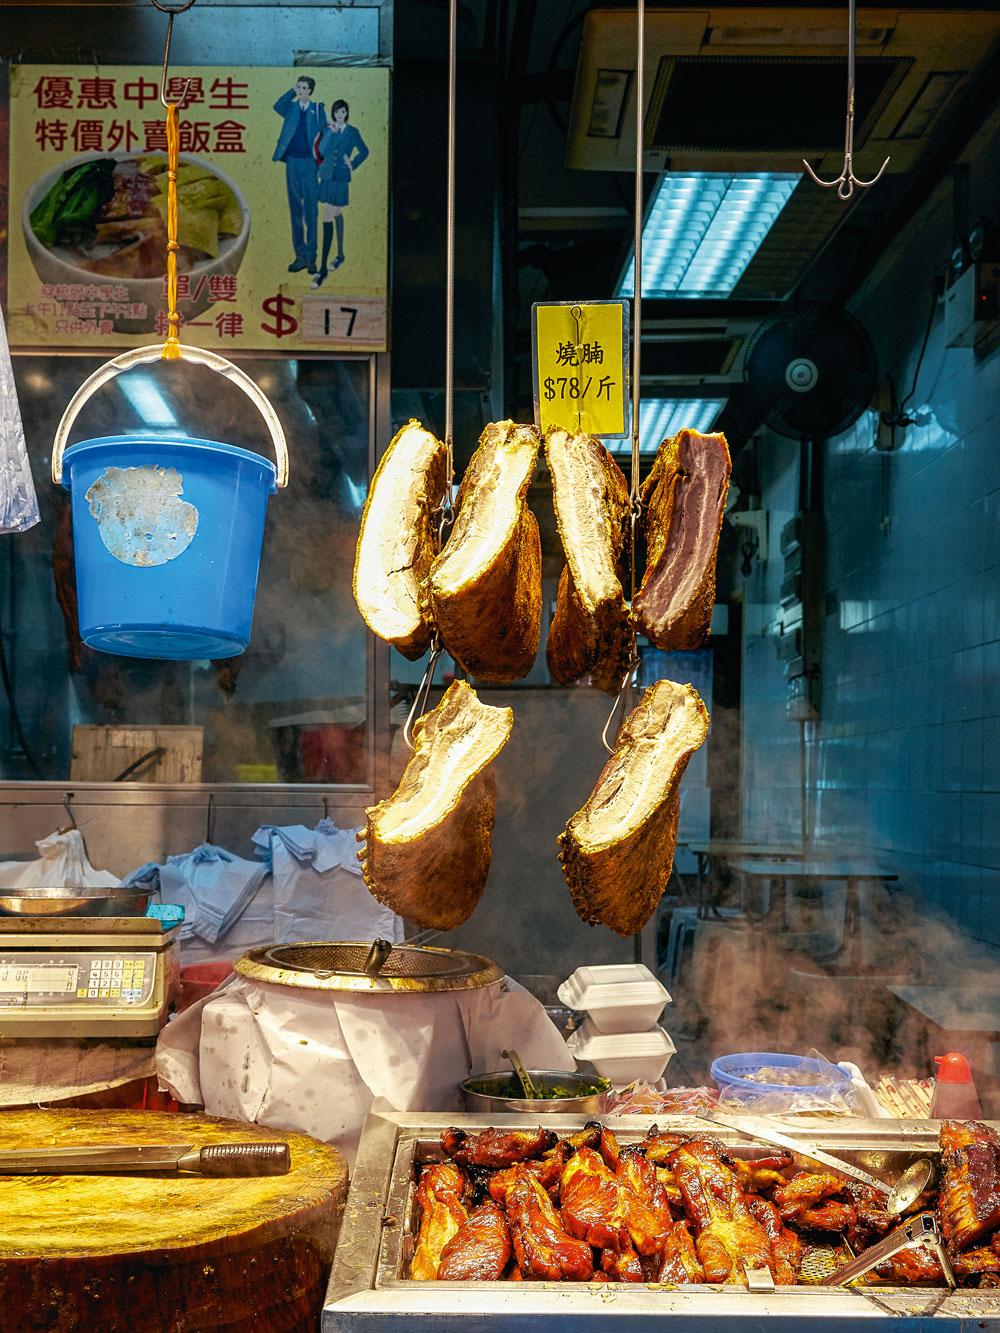 Street food op de Causeway Bay-markt.